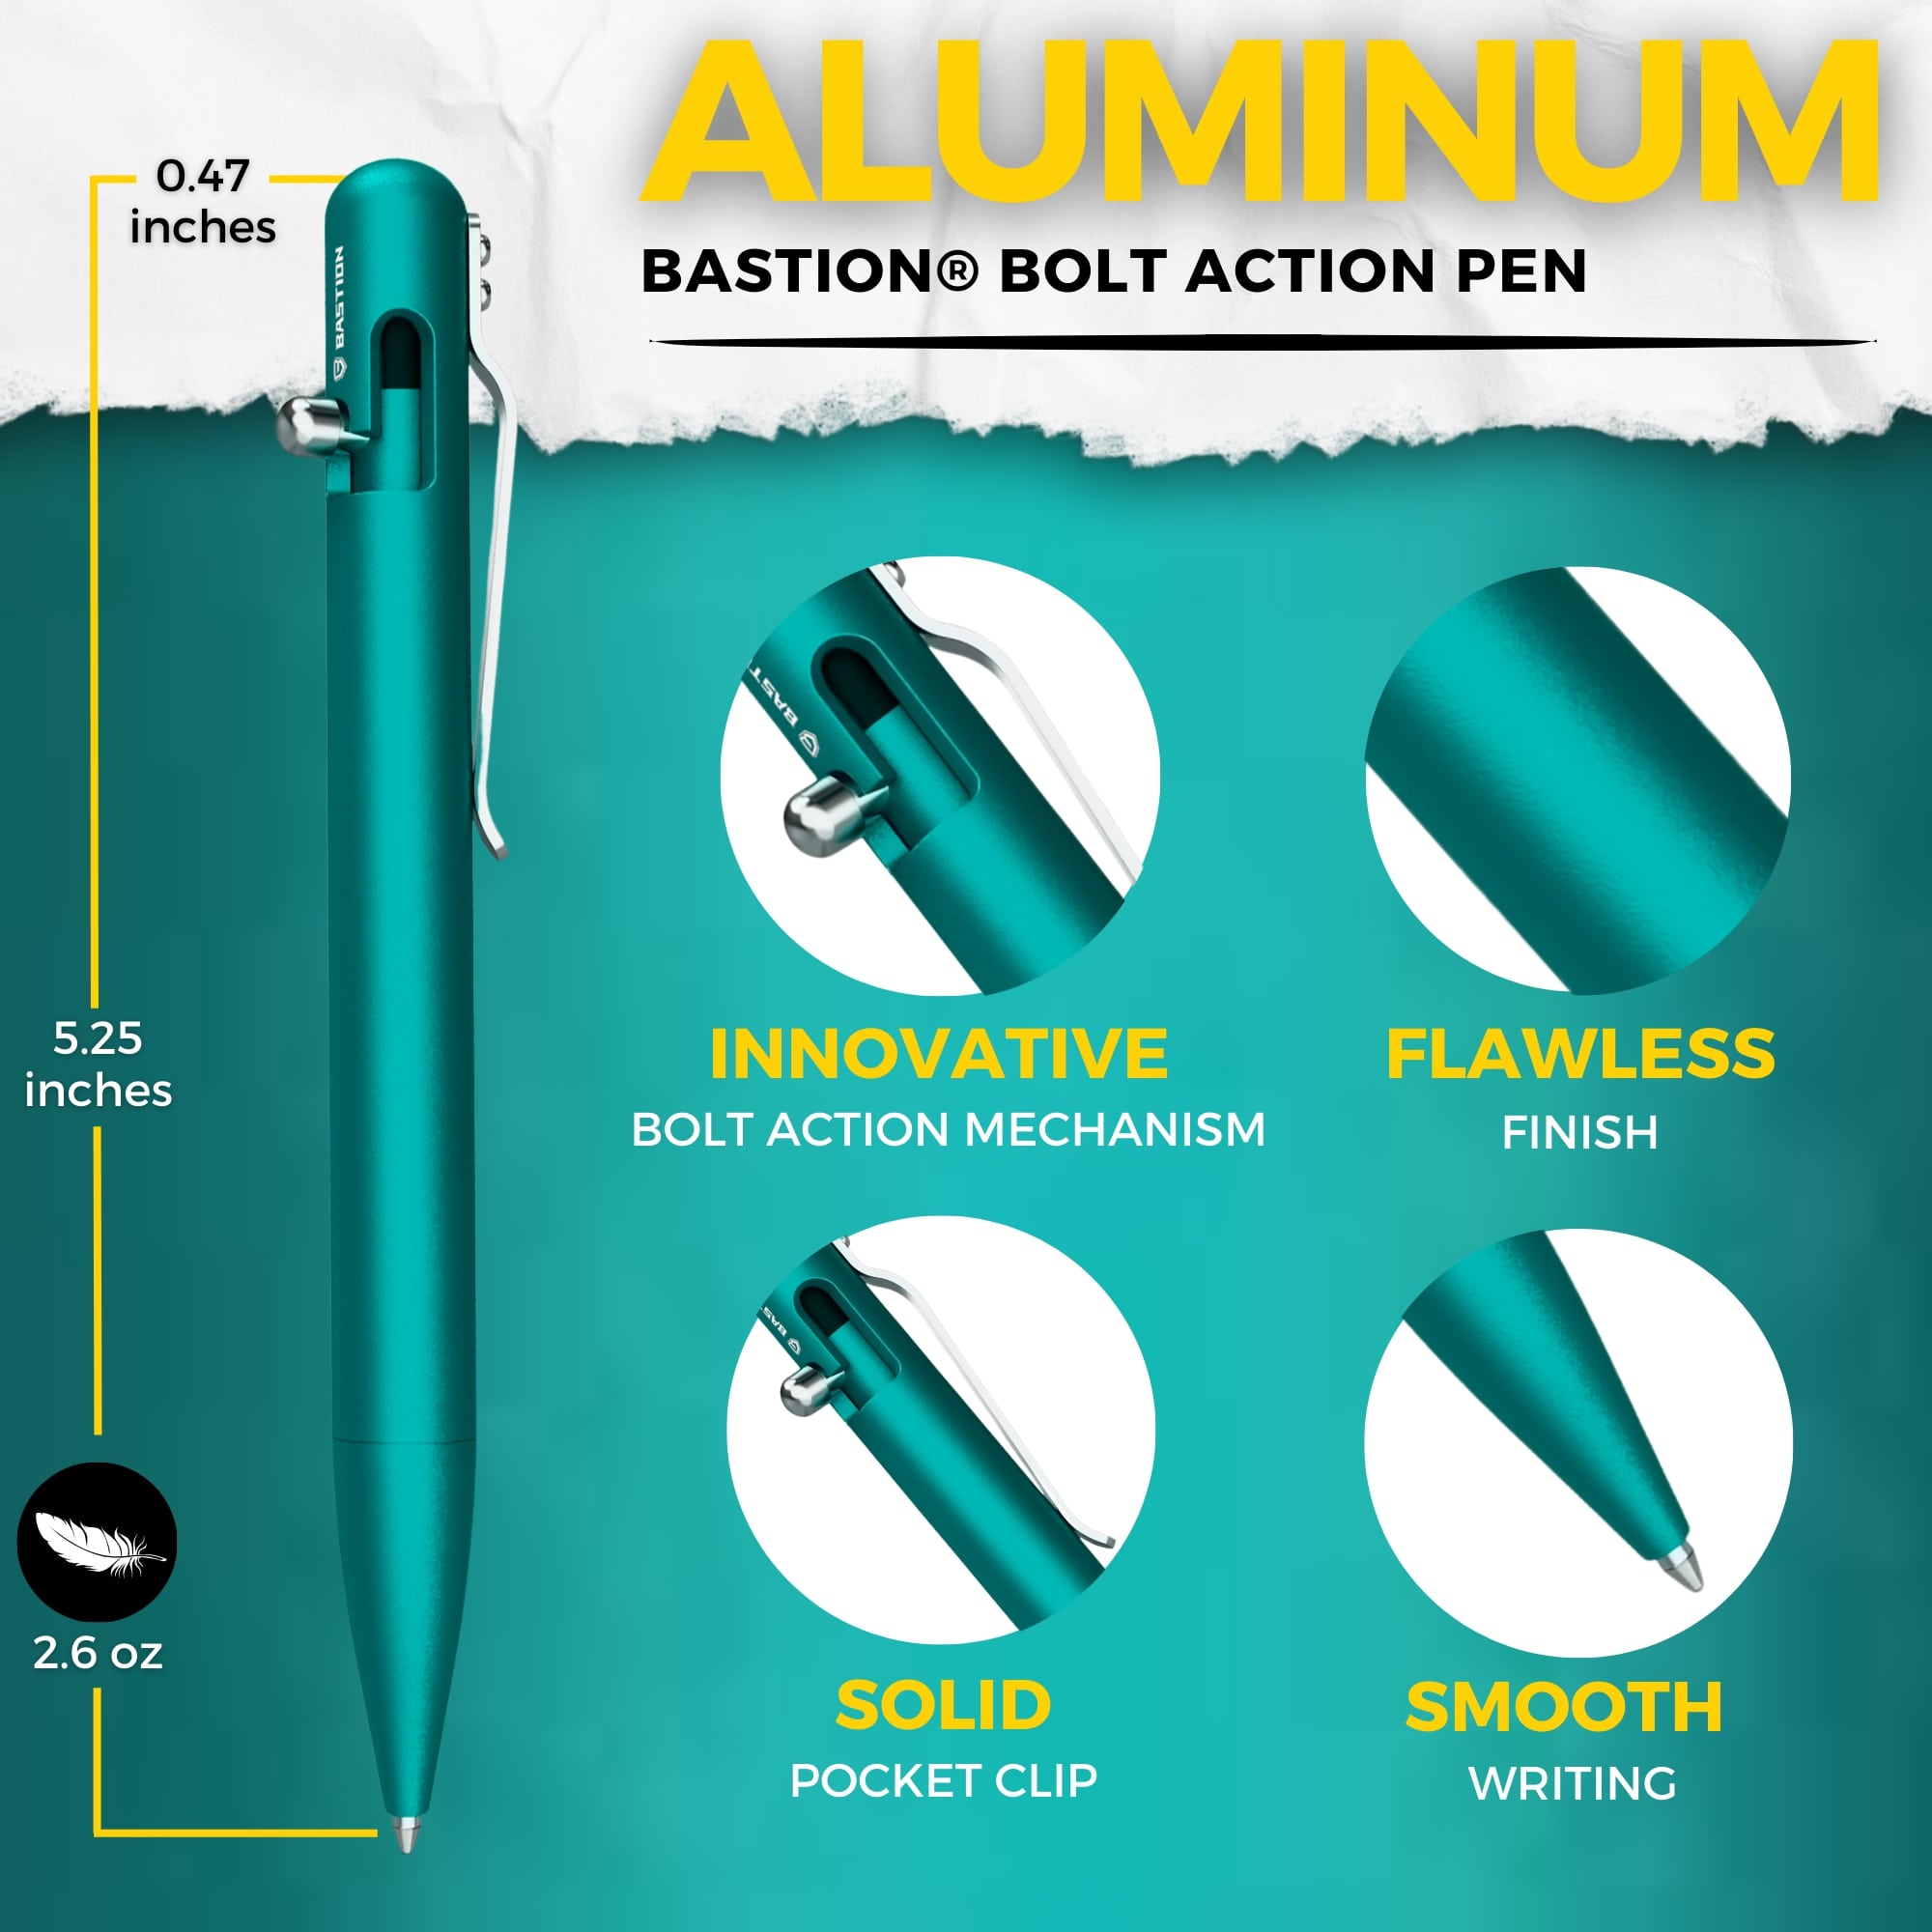 62% OFF-SALE-Aluminum - Bolt Action Pen by Bastion®